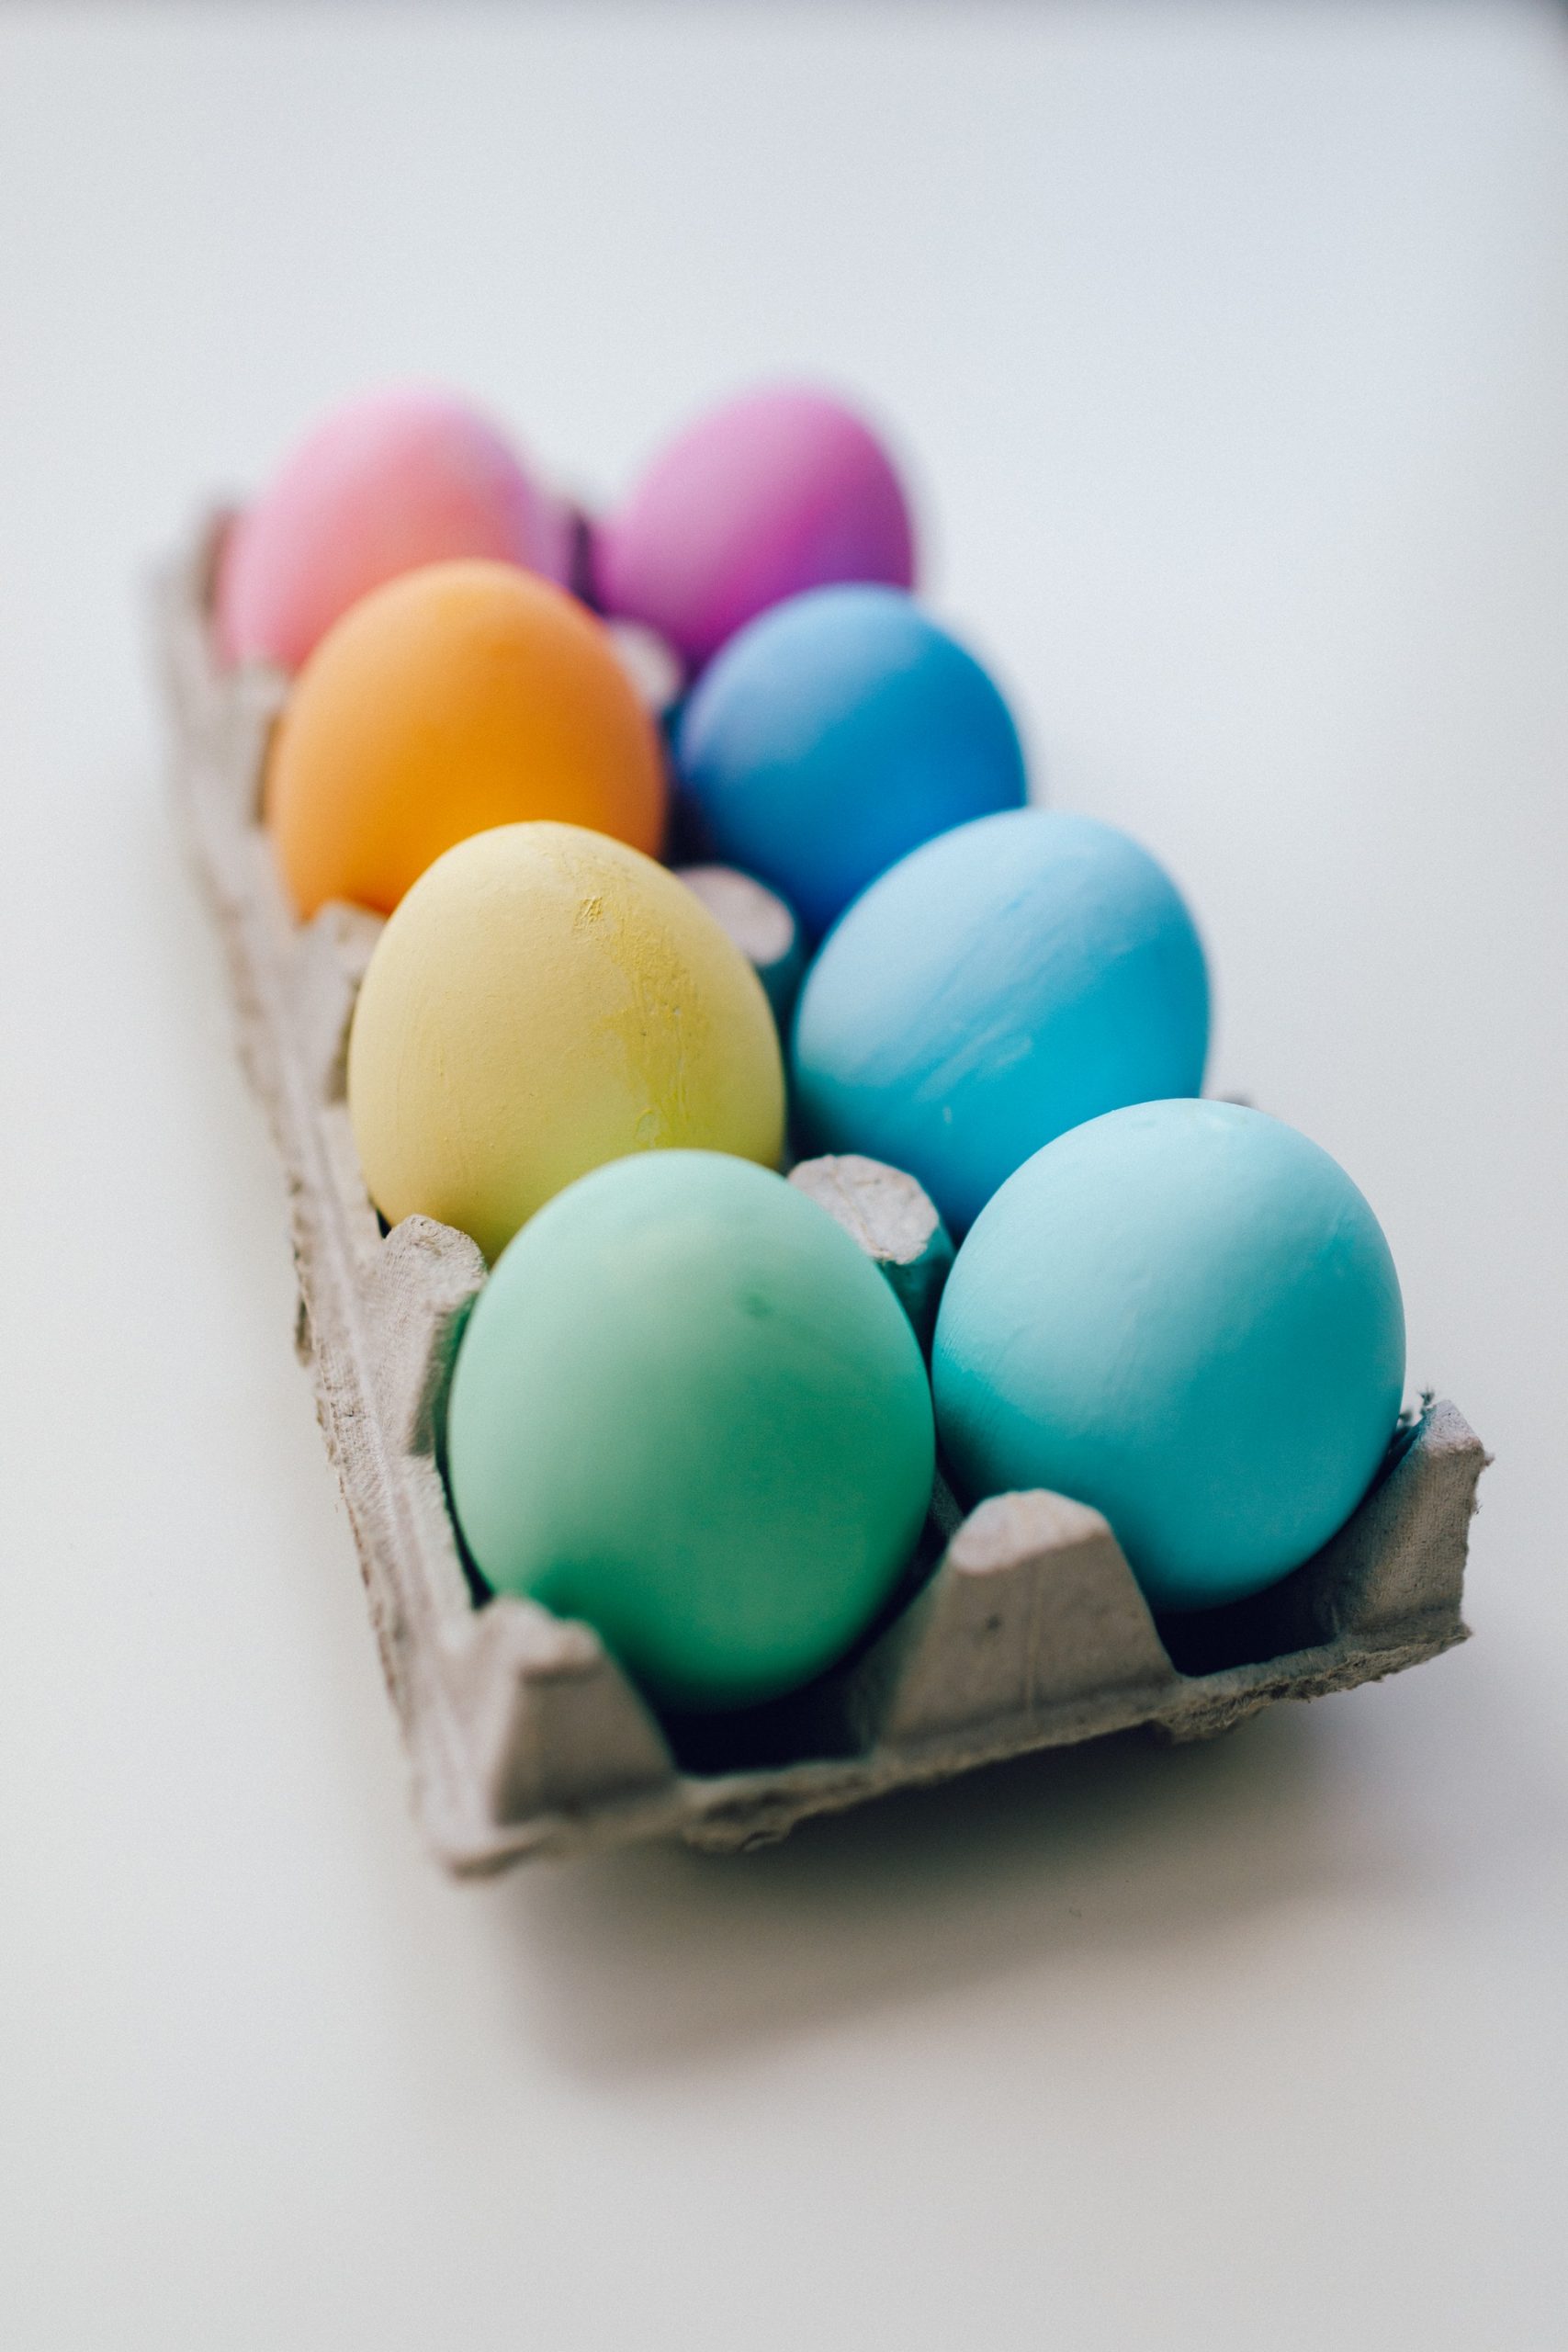 Cum poți să vopsești ouăle de Paște în mod natural, fără vopsea